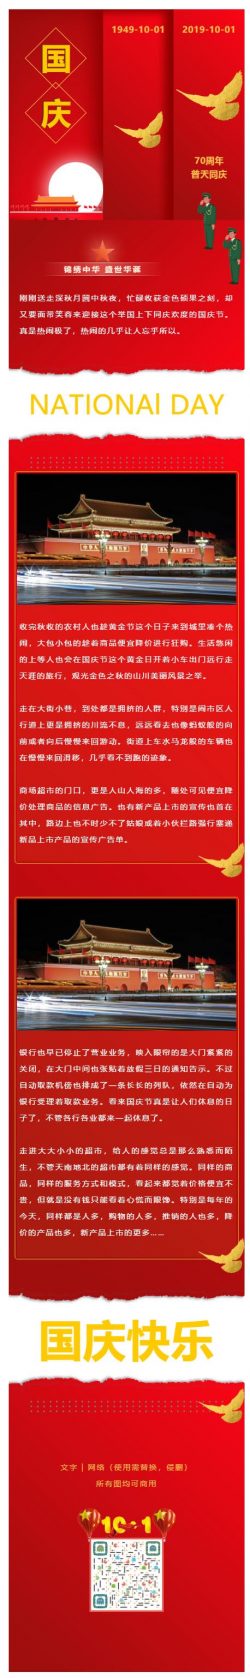 国庆70周年推文模板微信公众号推送文章素材国庆节红色风格党政